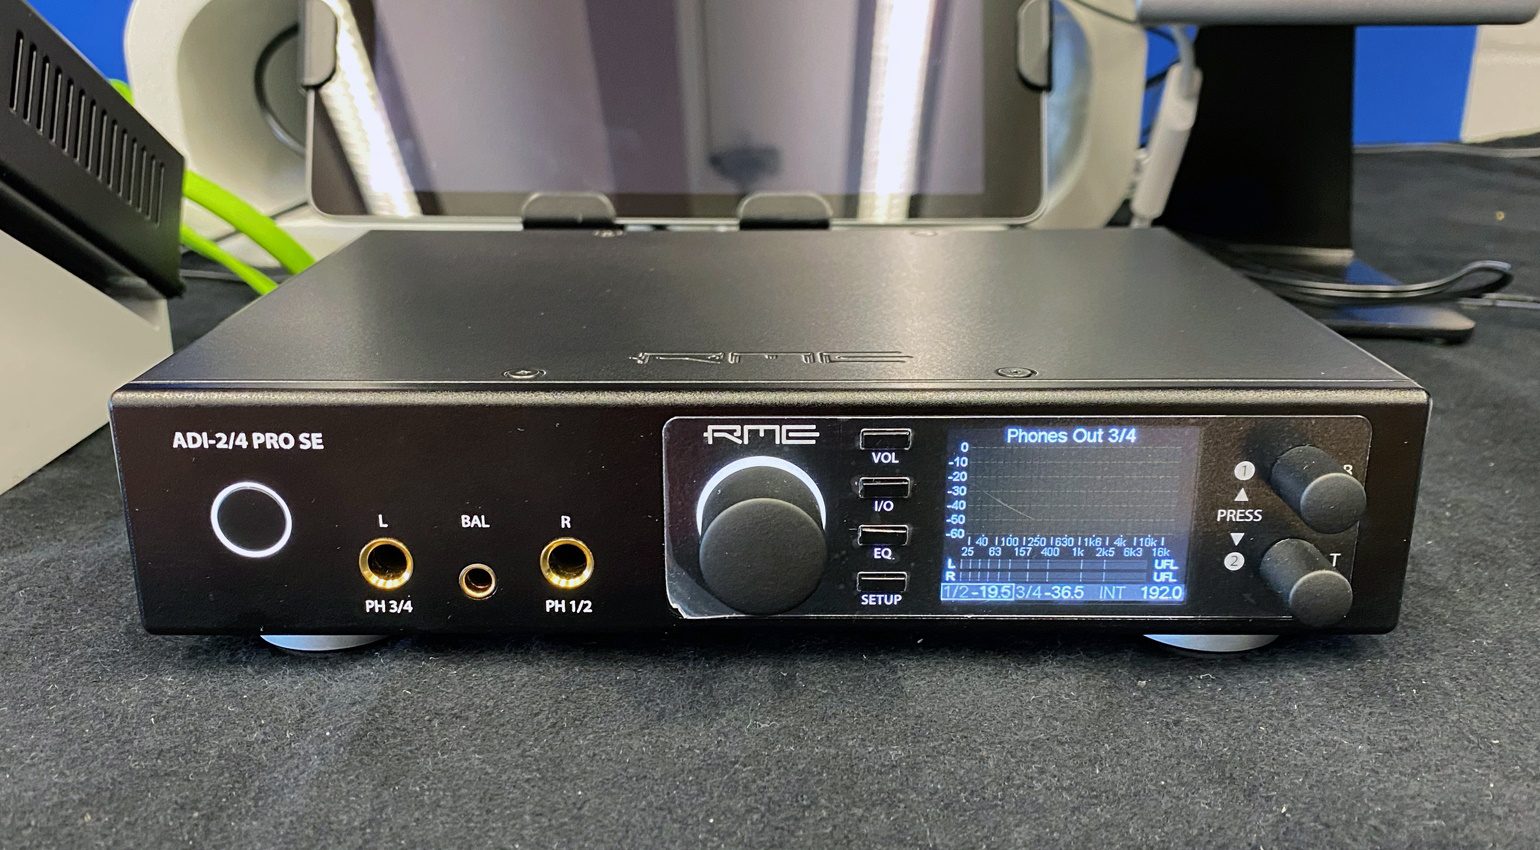 RME ADI-2/4 PRO SE DAC позволит записывать и прослушивать аудиосигнал с частотой дискретизации до 768 кГц